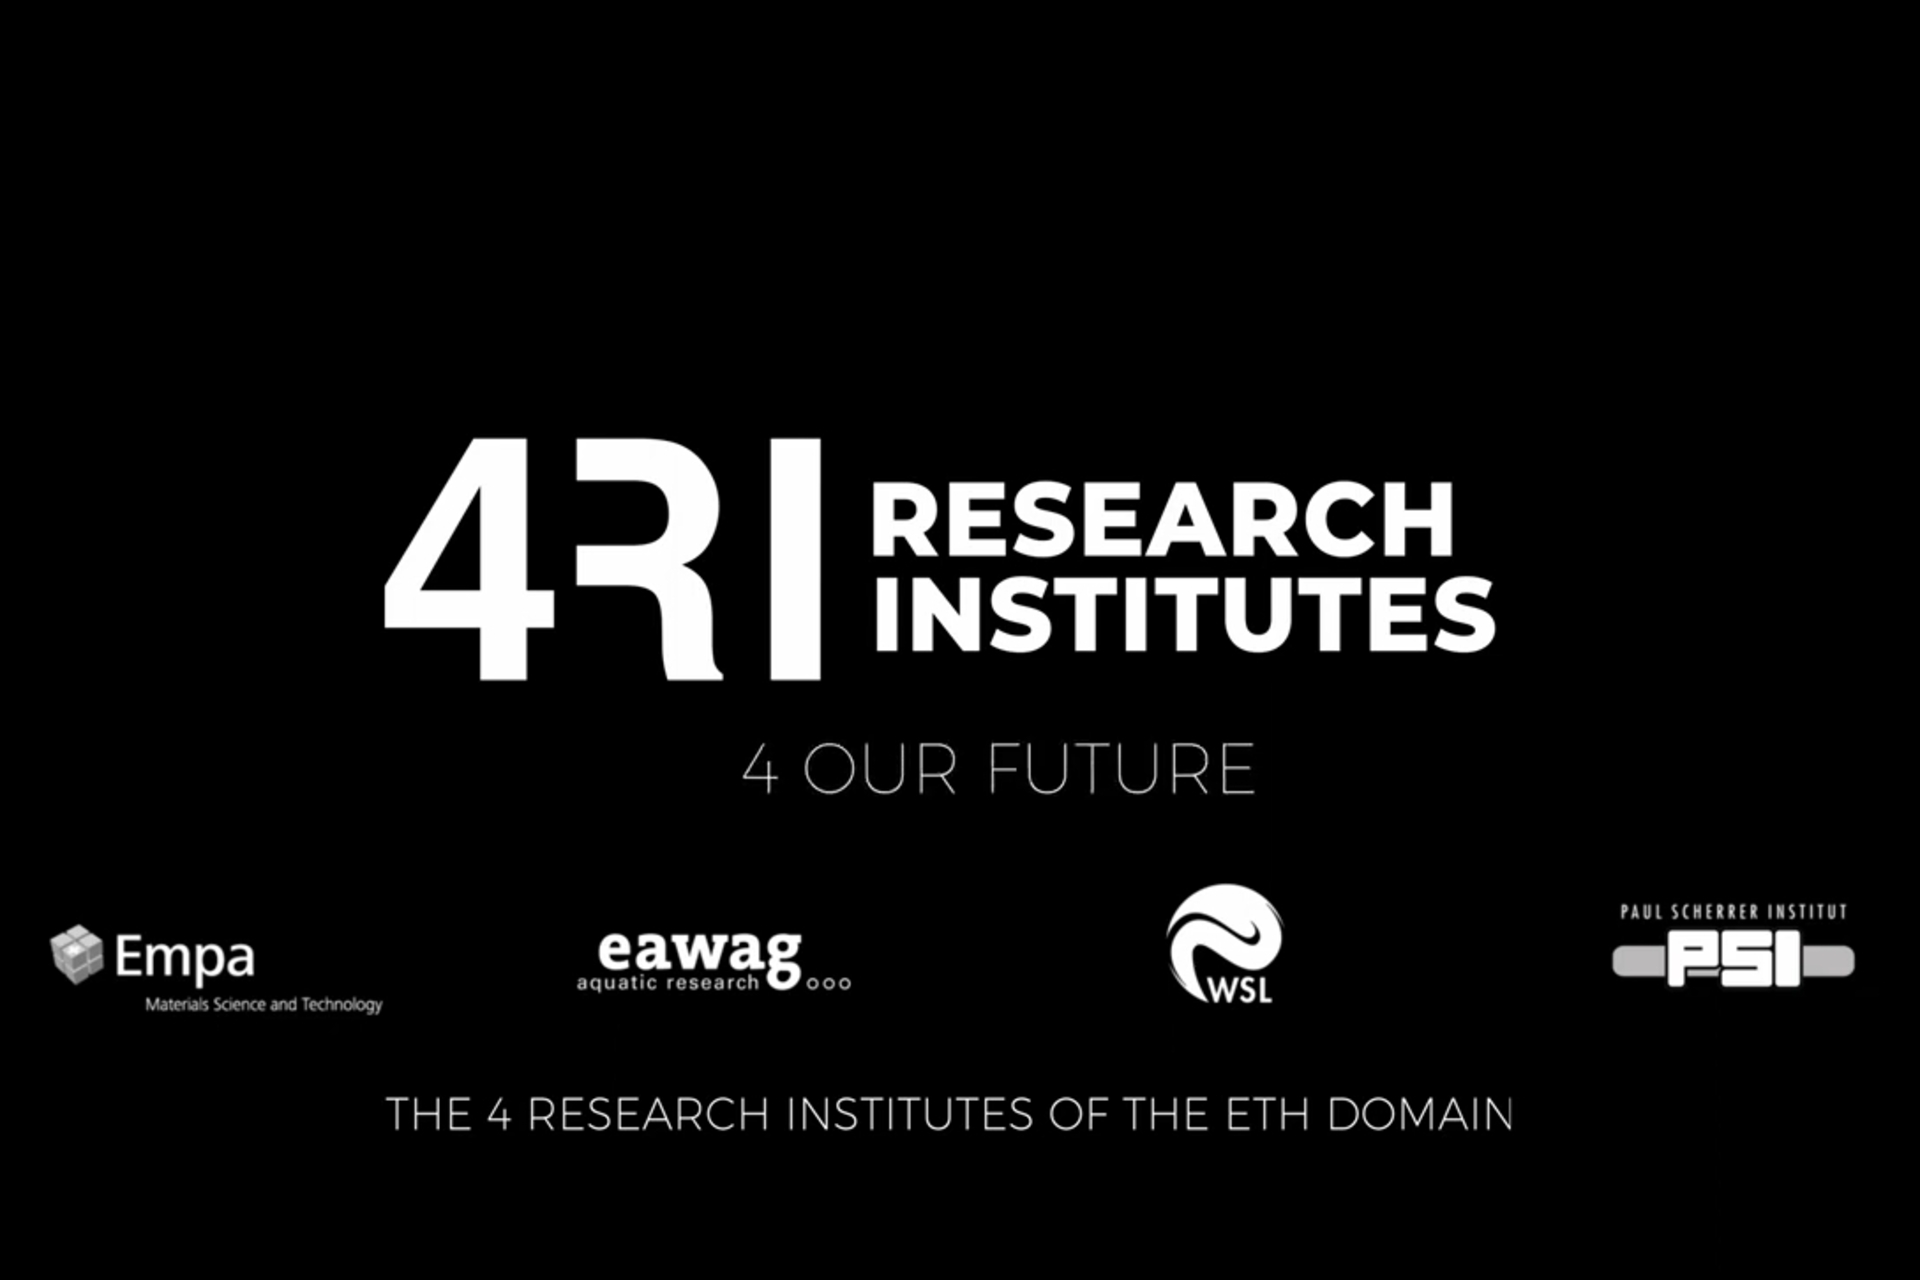 Centros de pesquisa suíços: EMPA, EAWAG, WSL e PSI